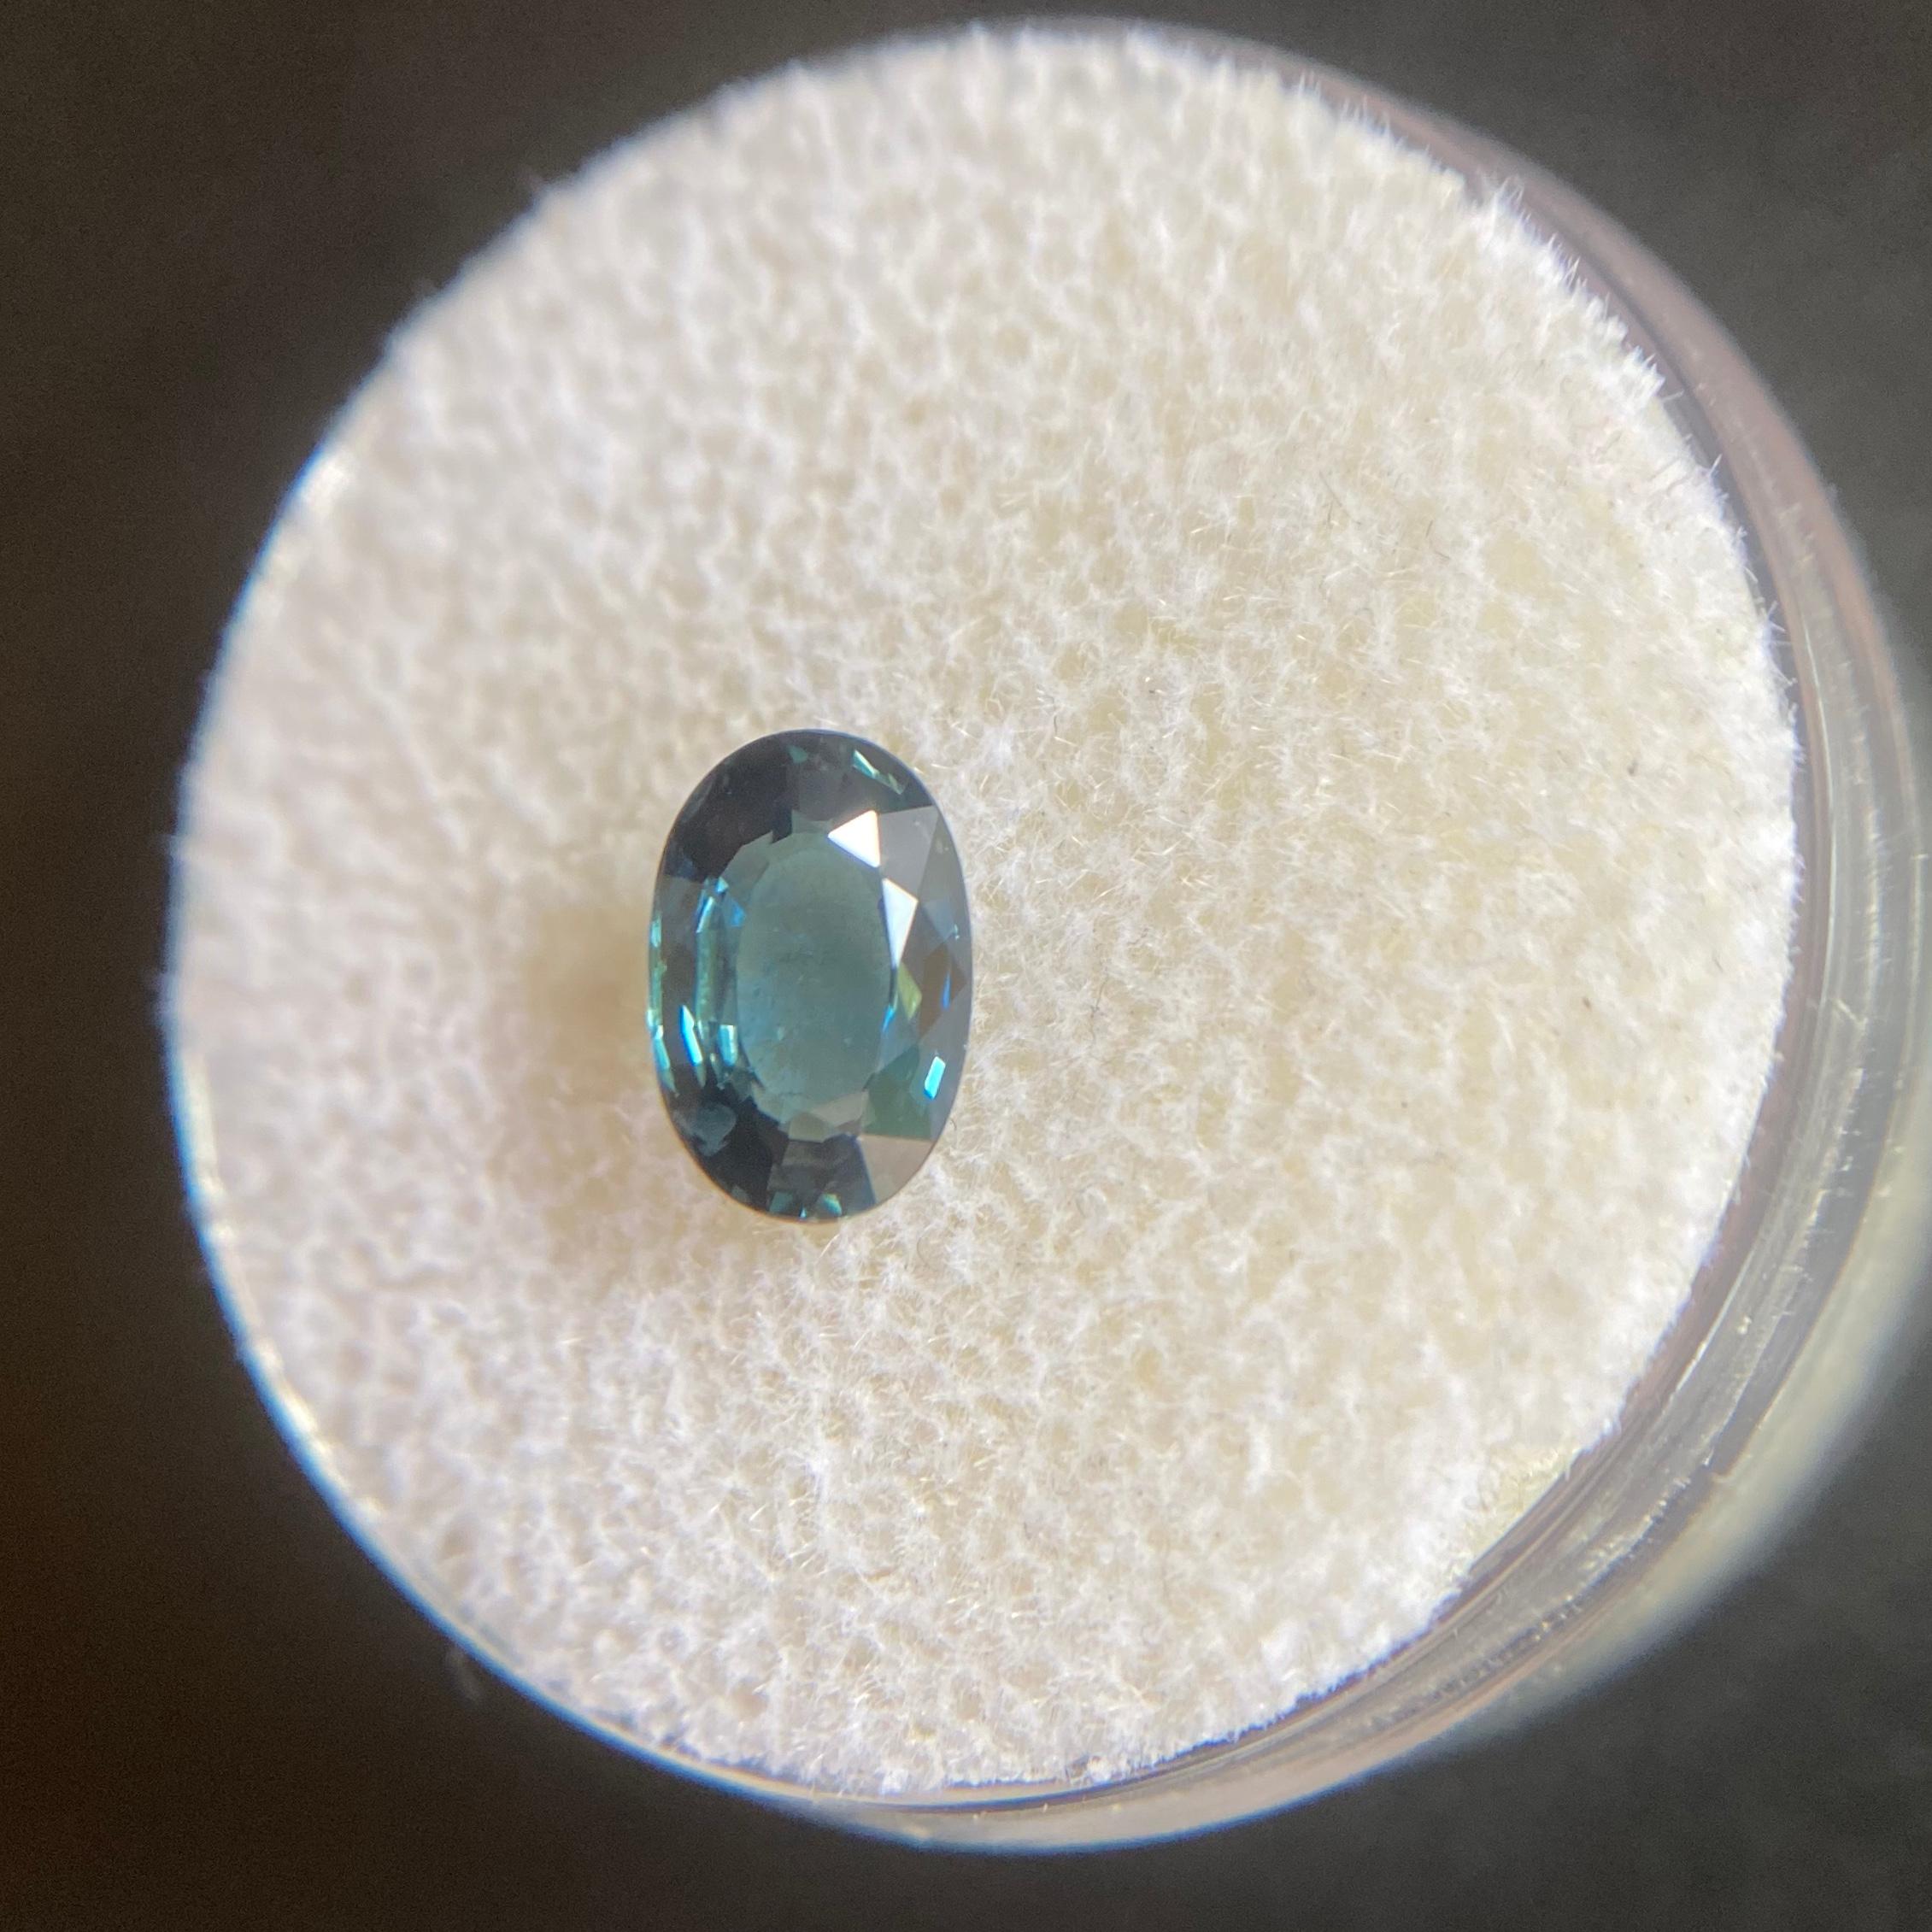 Natürlicher Thailand Blauer Saphir Edelstein IGI zertifiziert.

1.18 Karat Stein mit sehr gutem Ovalschliff und guter Reinheit. Einige kleine natürliche Einschlüsse bei genauem Hinsehen sichtbar, aber kein schmutziger Stein. Vollständig zertifiziert